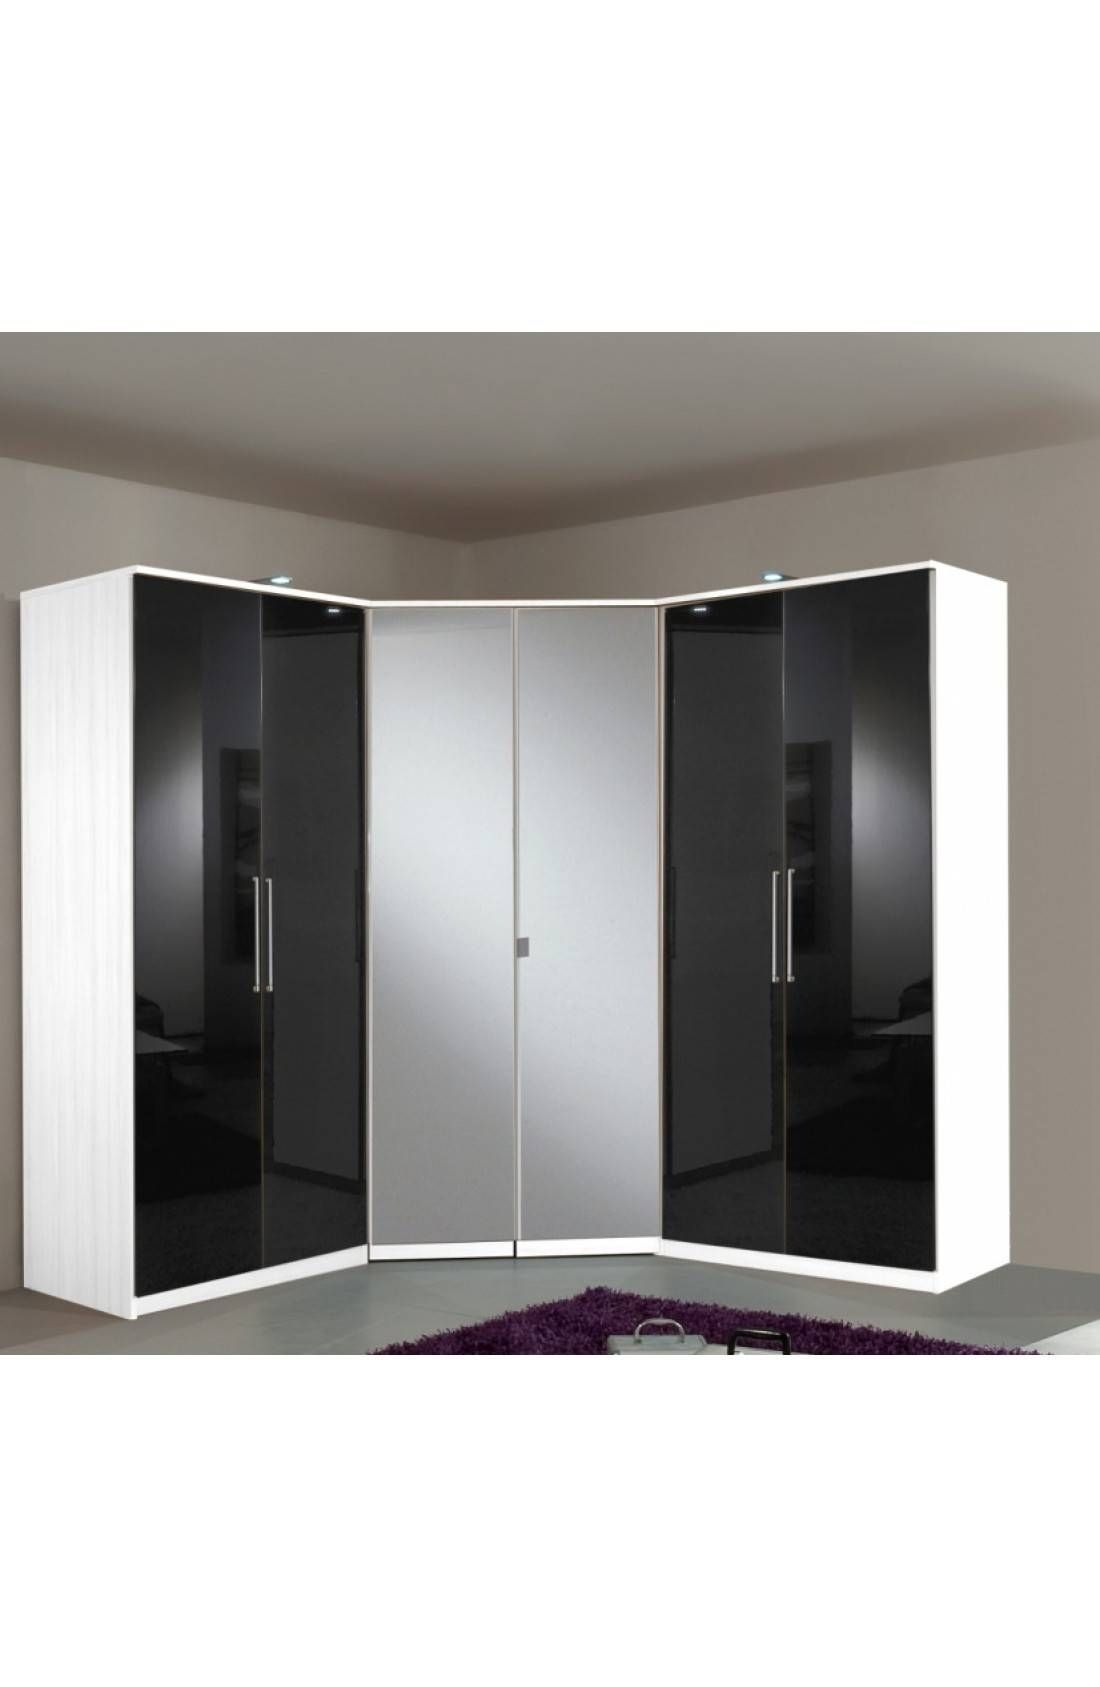 Slumberhaus 'gamma' 6 Door Corner Wardrobe Fitment With White With Regard To White Gloss Corner Wardrobes (View 4 of 15)